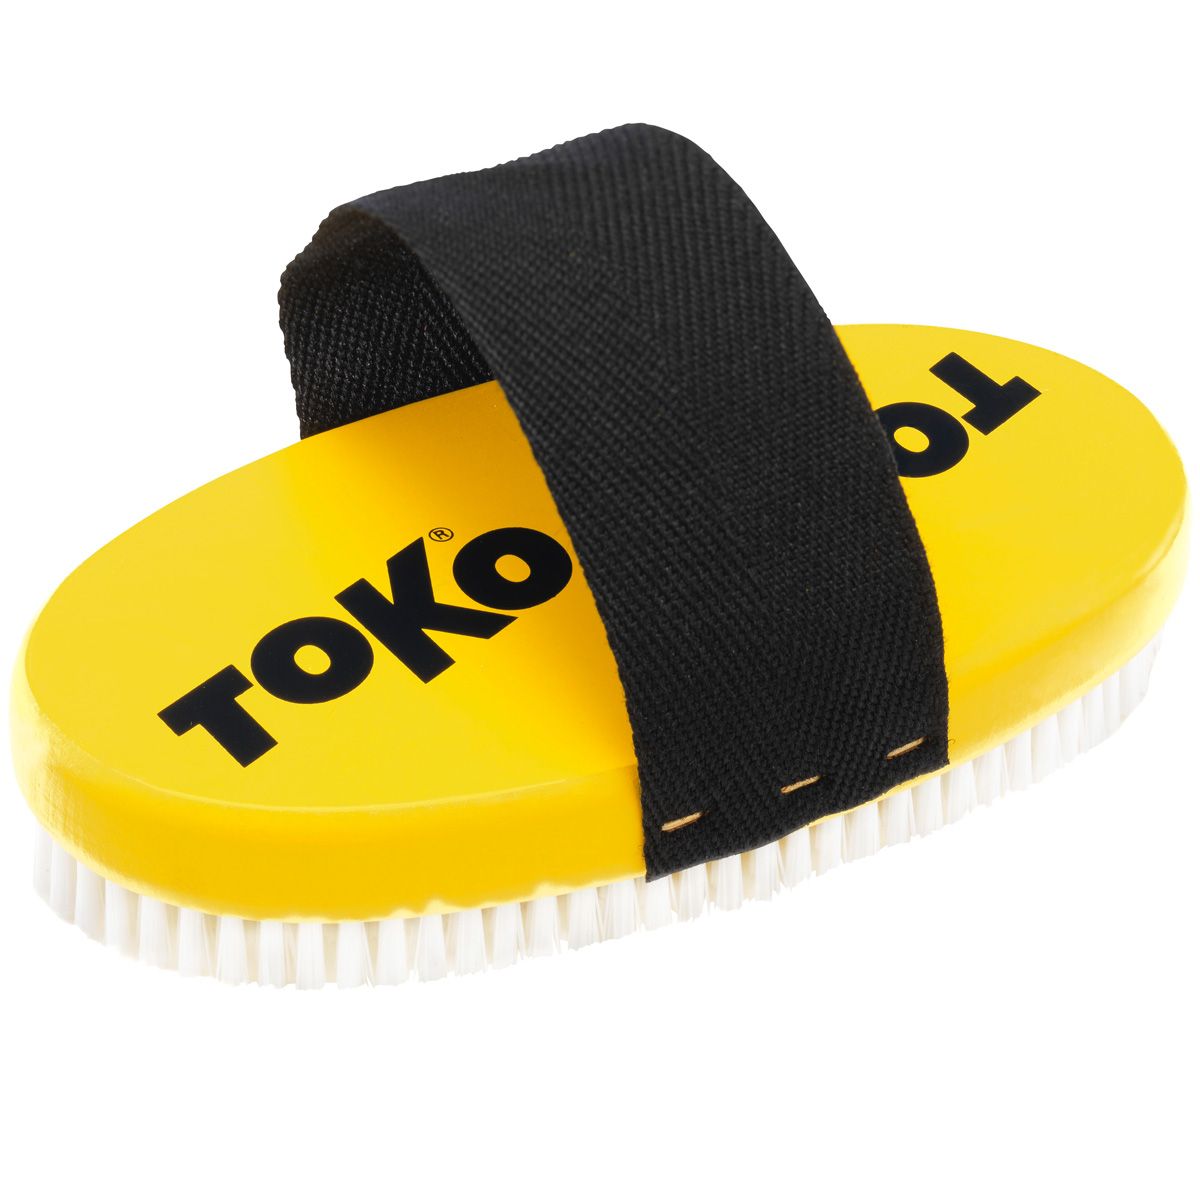 Toko Base Brush oval Nylon von TOKO